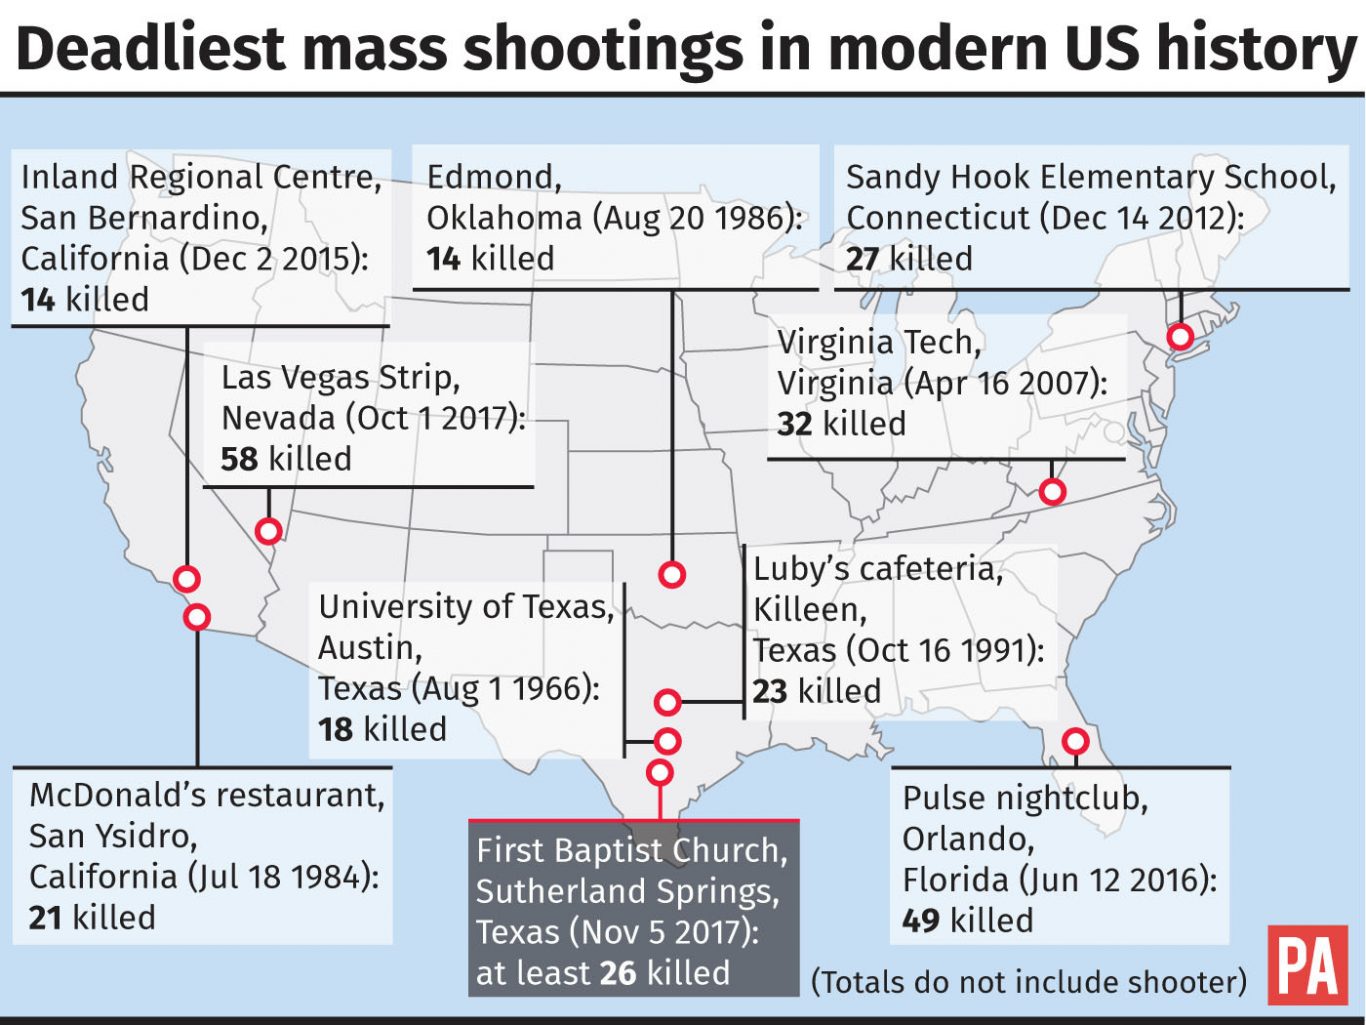 Mass shootings